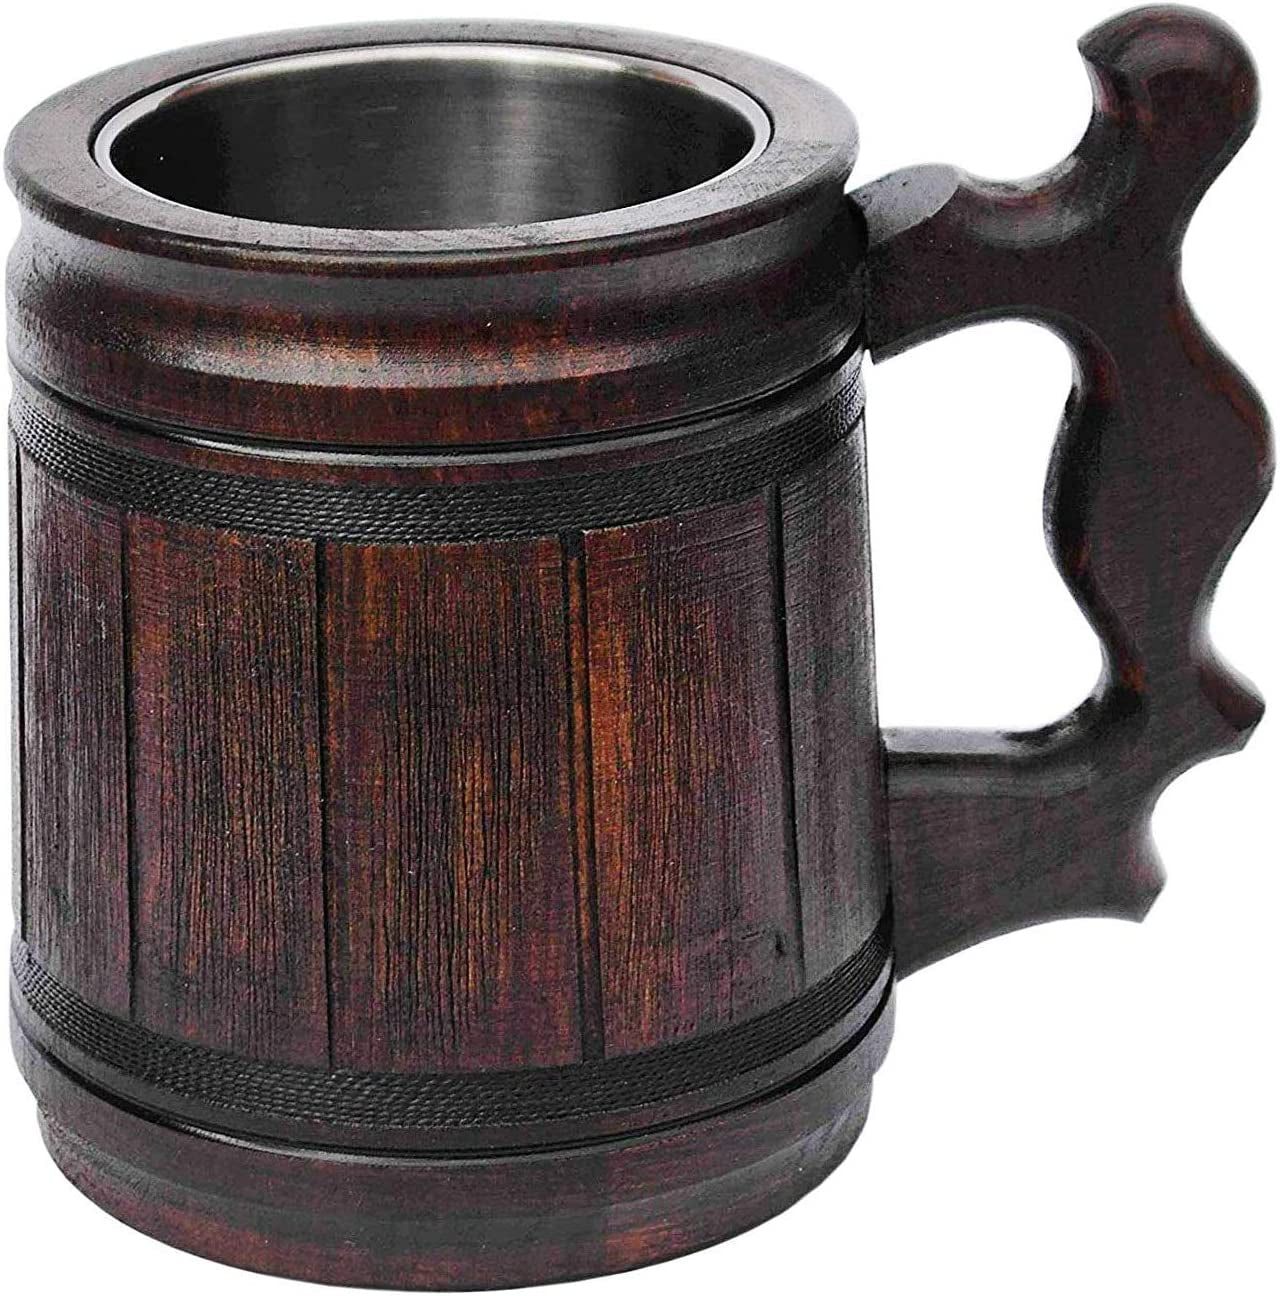 Handmade Beer Mug (10 OZ) Wooden Tankard Beer Stein Oak Wood Stainless Steel Cup Gift Natural Eco-Friendly